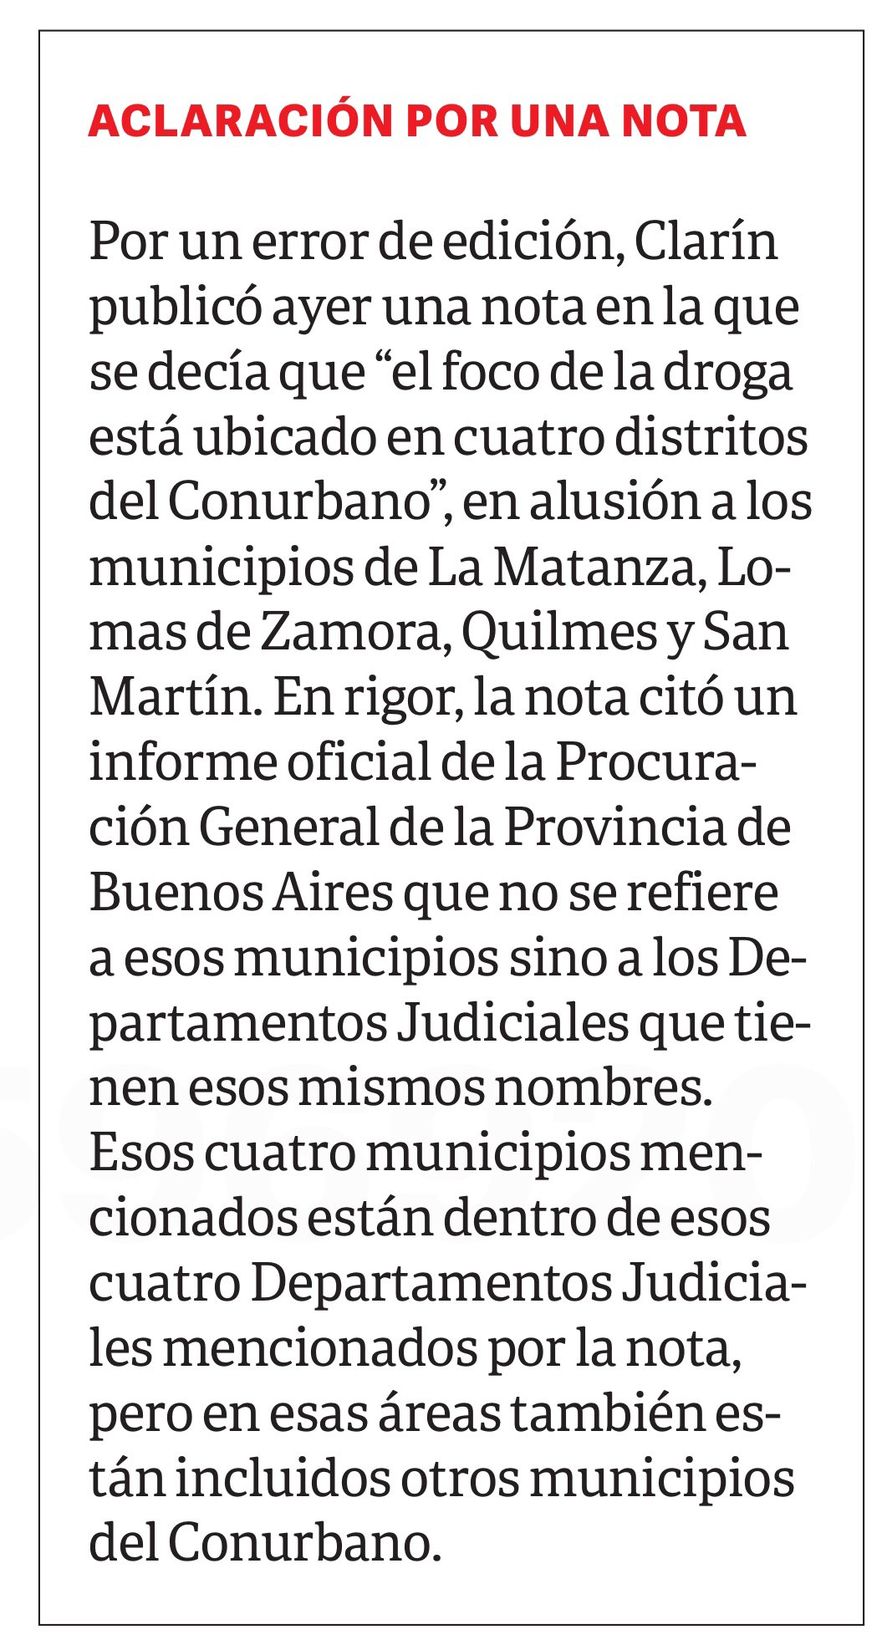 La aclaración de Clarín sobre su supuesto error al confundir distritos del conurbano com departamentos judiciales 